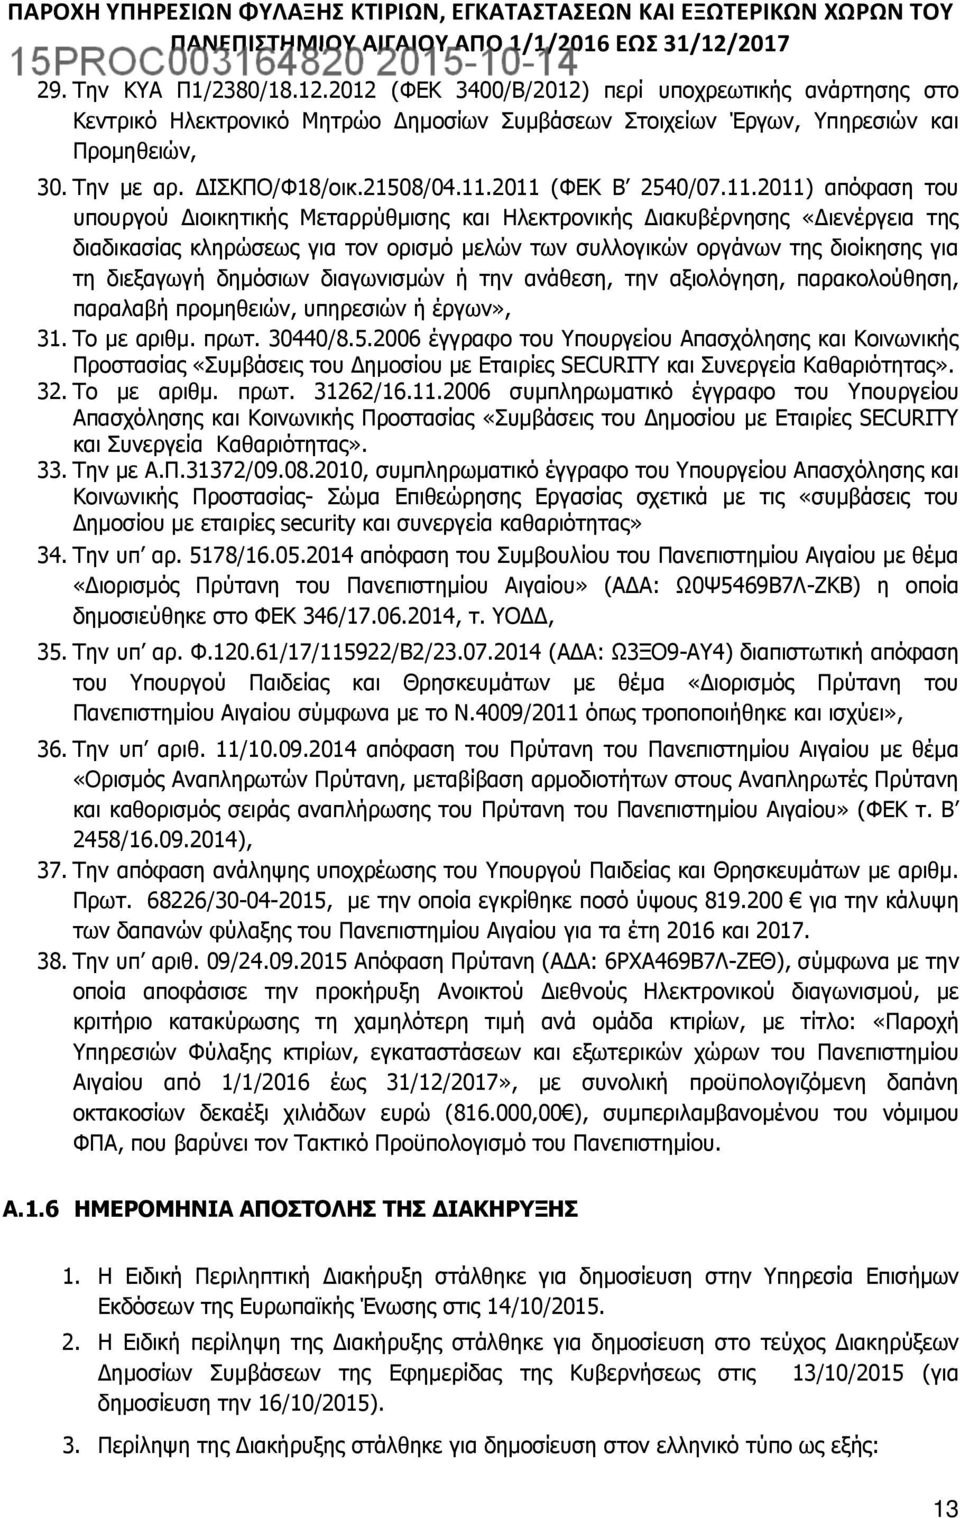 2011 (ΦΕΚ Β 2540/07.11.2011) απόφαση του υπουργού Διοικητικής Μεταρρύθμισης και Ηλεκτρονικής Διακυβέρνησης «Διενέργεια της διαδικασίας κληρώσεως για τον ορισμό μελών των συλλογικών οργάνων της